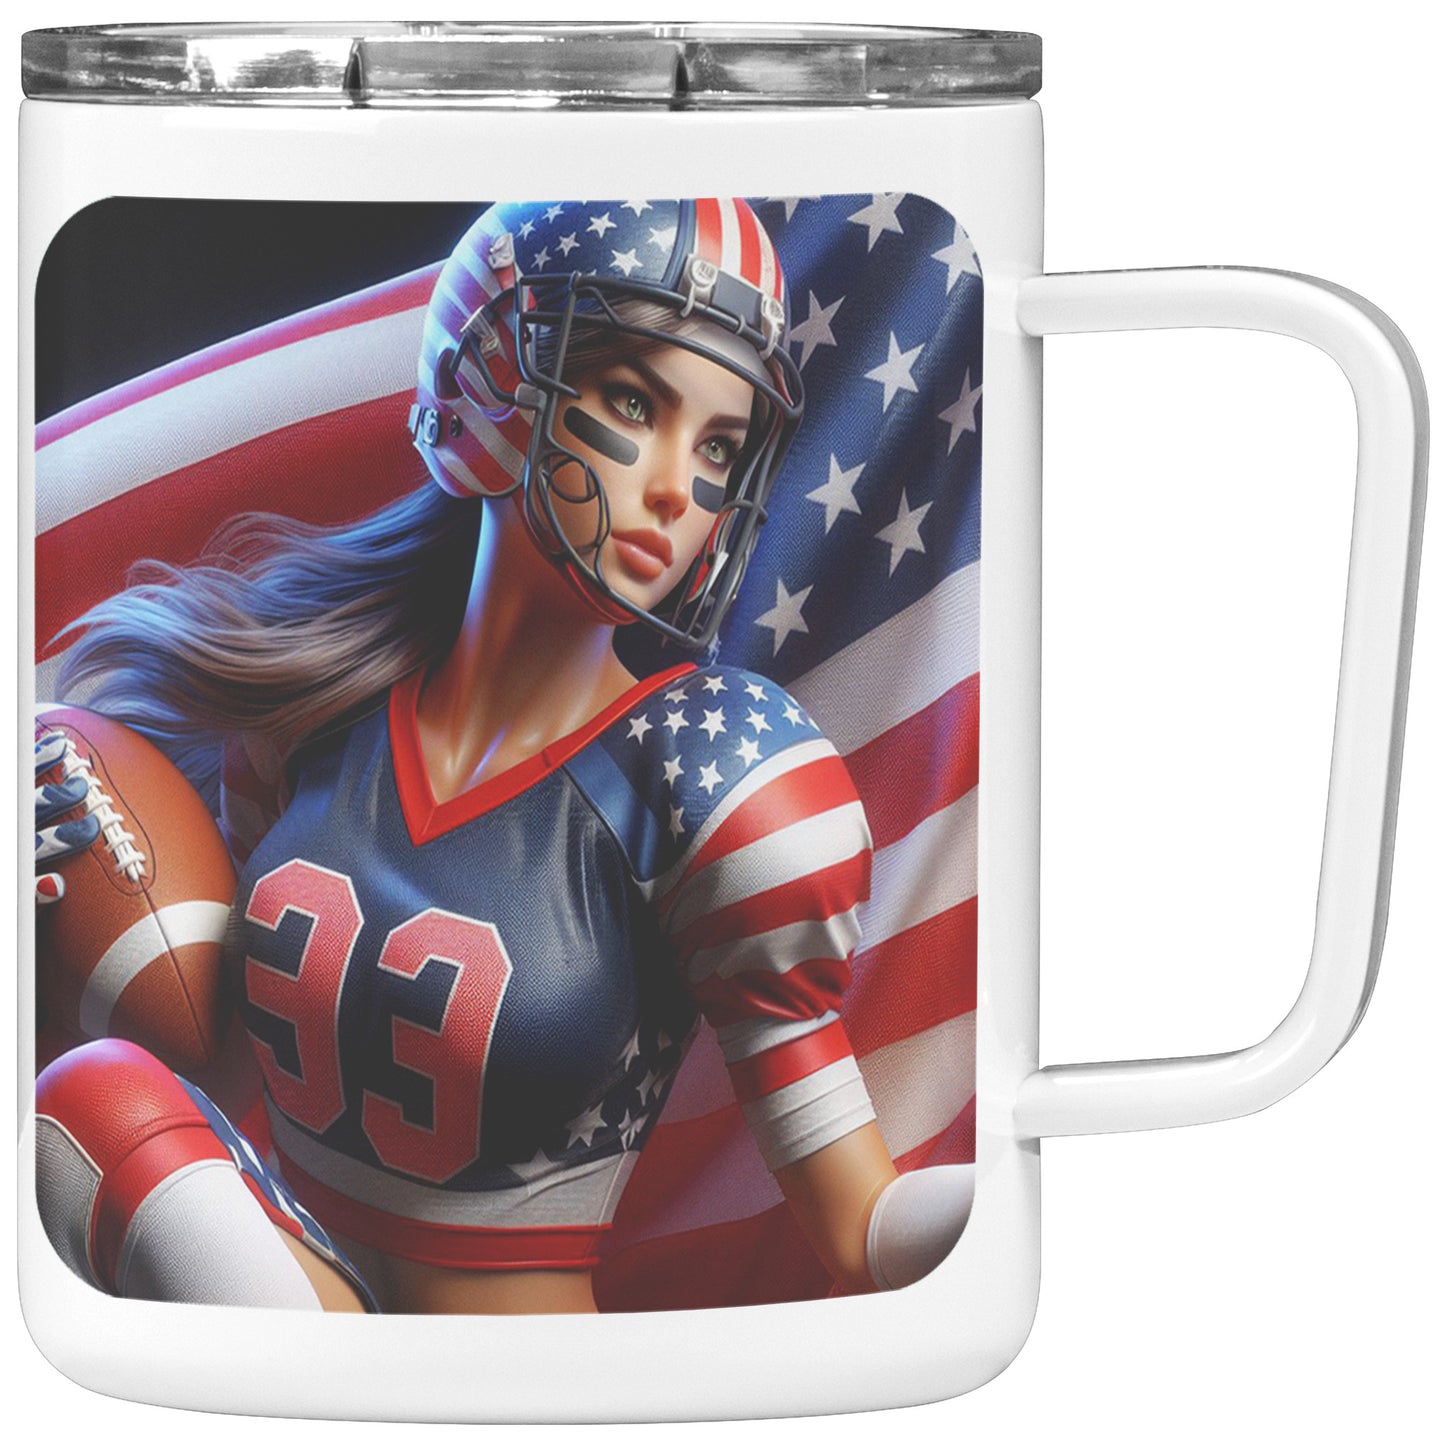 Woman Football Player - Insulated Coffee Mug #42